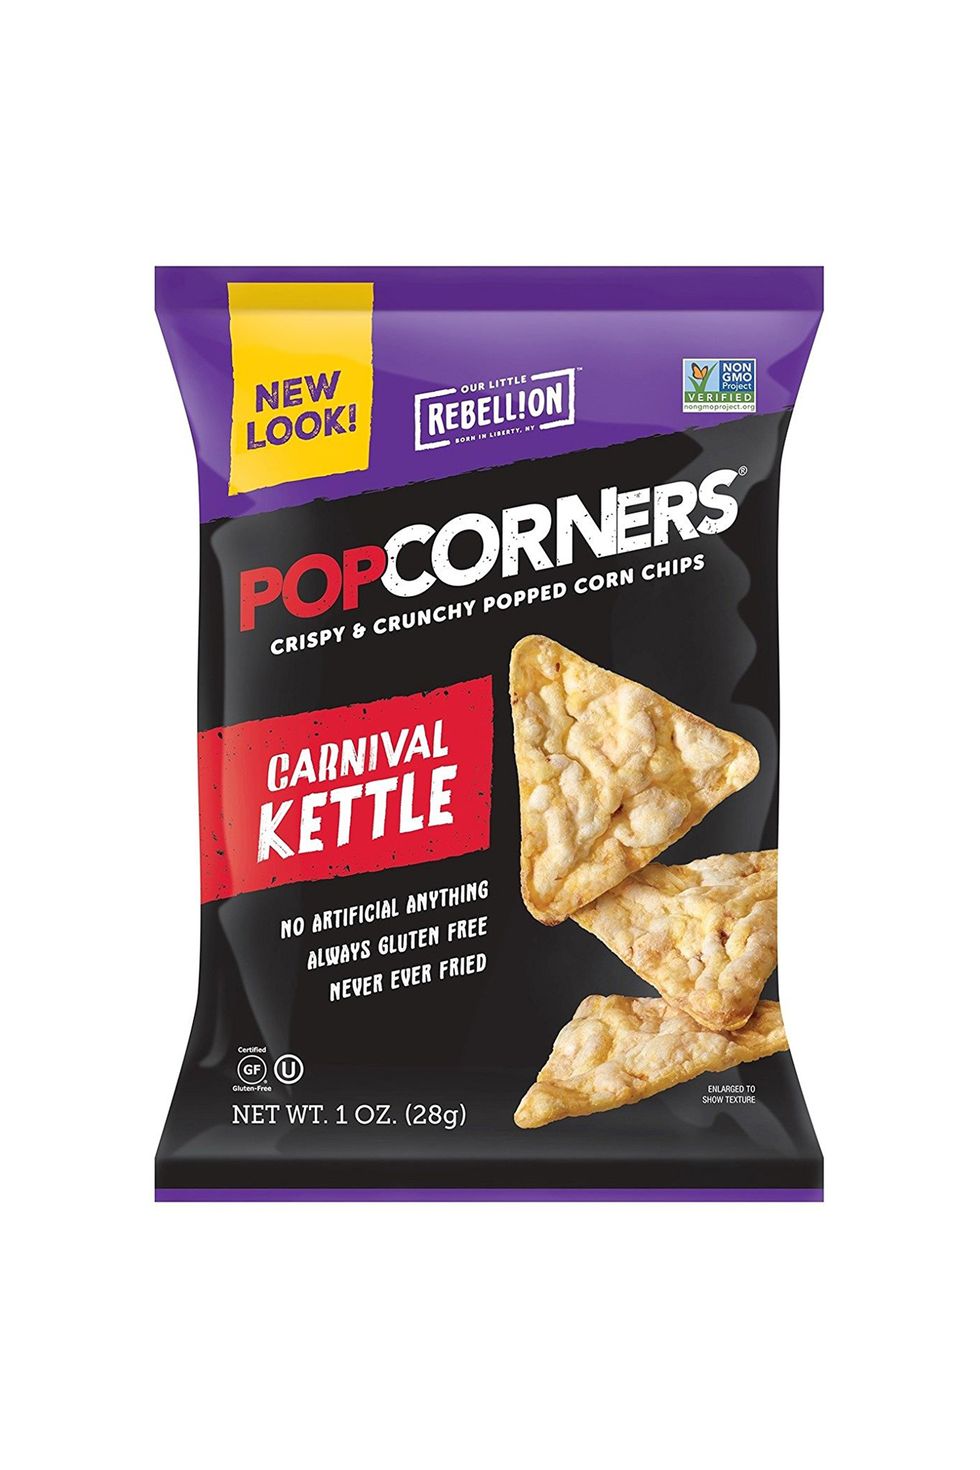 Carnival Kettle Popcorners